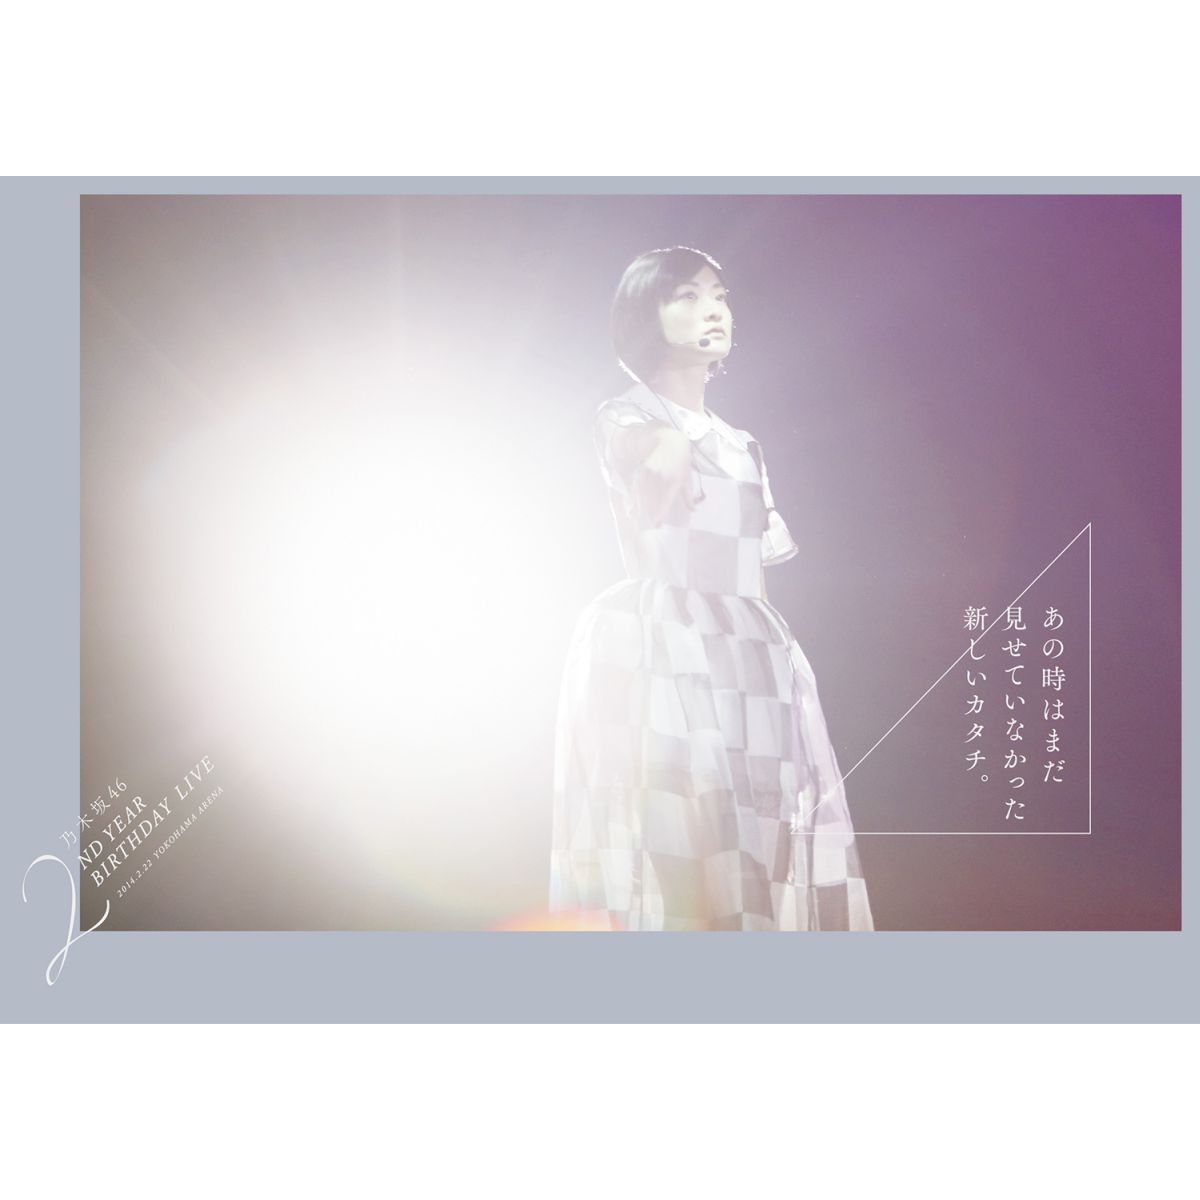 楽天ブックス: 乃木坂46 2ND YEAR BIRTHDAY LIVE 2014.2.22 YOKOHAMA ARENA 【完全生産限定盤